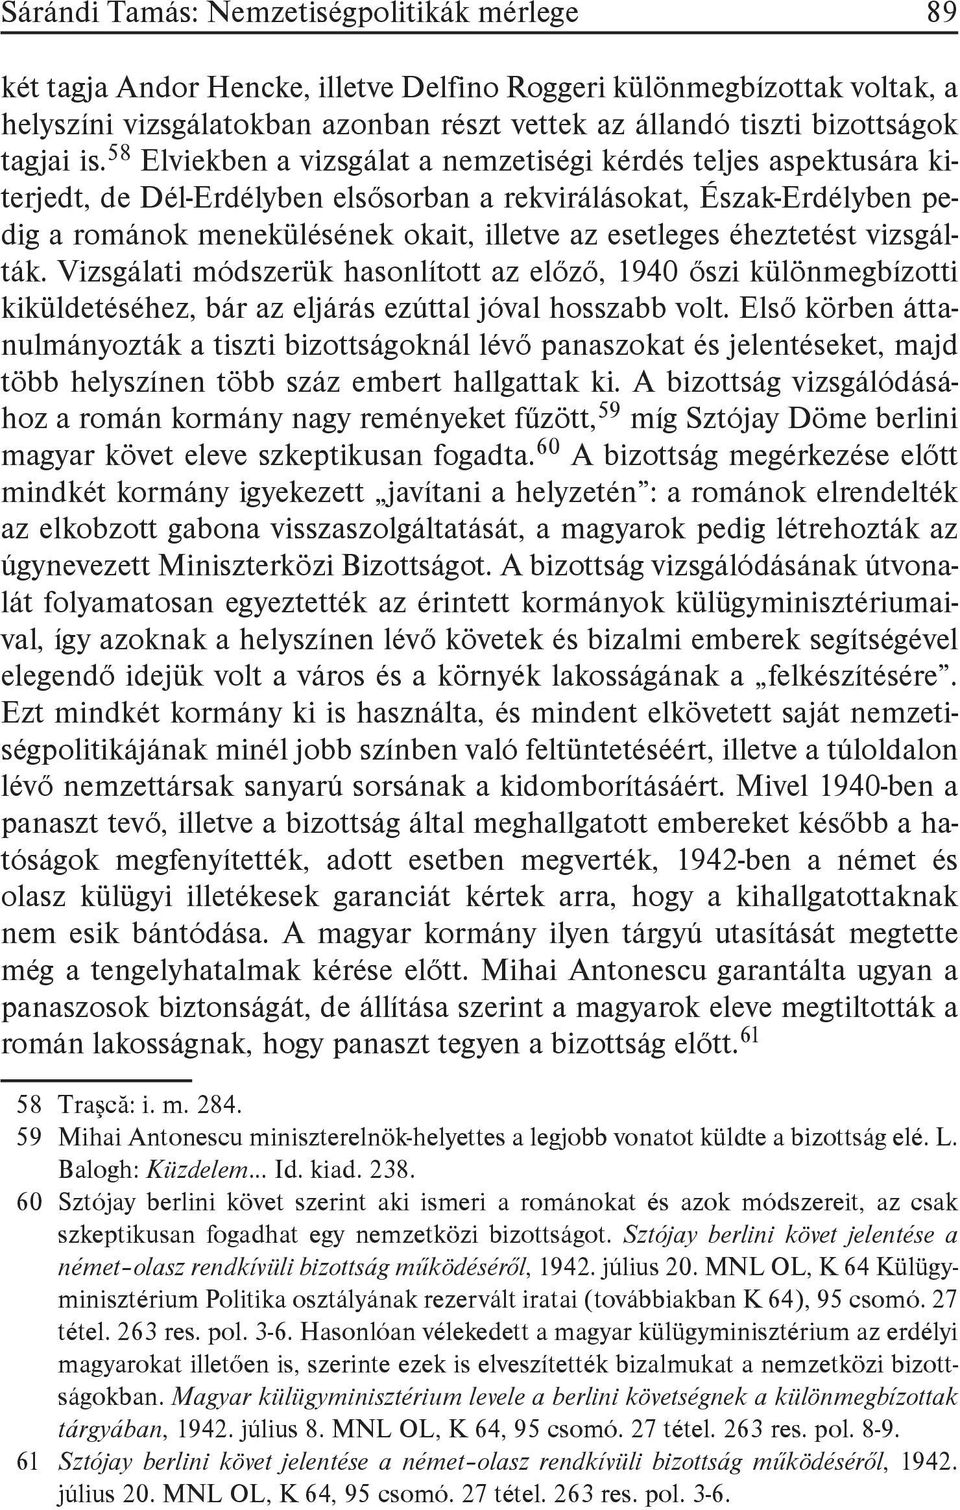 58 Elviekben a vizsgálat a nemzetiségi kérdés teljes aspektusára kiterjedt, de Dél-Erdélyben elsősorban a rekvirálásokat, Észak-Erdélyben pedig a románok menekülésének okait, illetve az esetleges